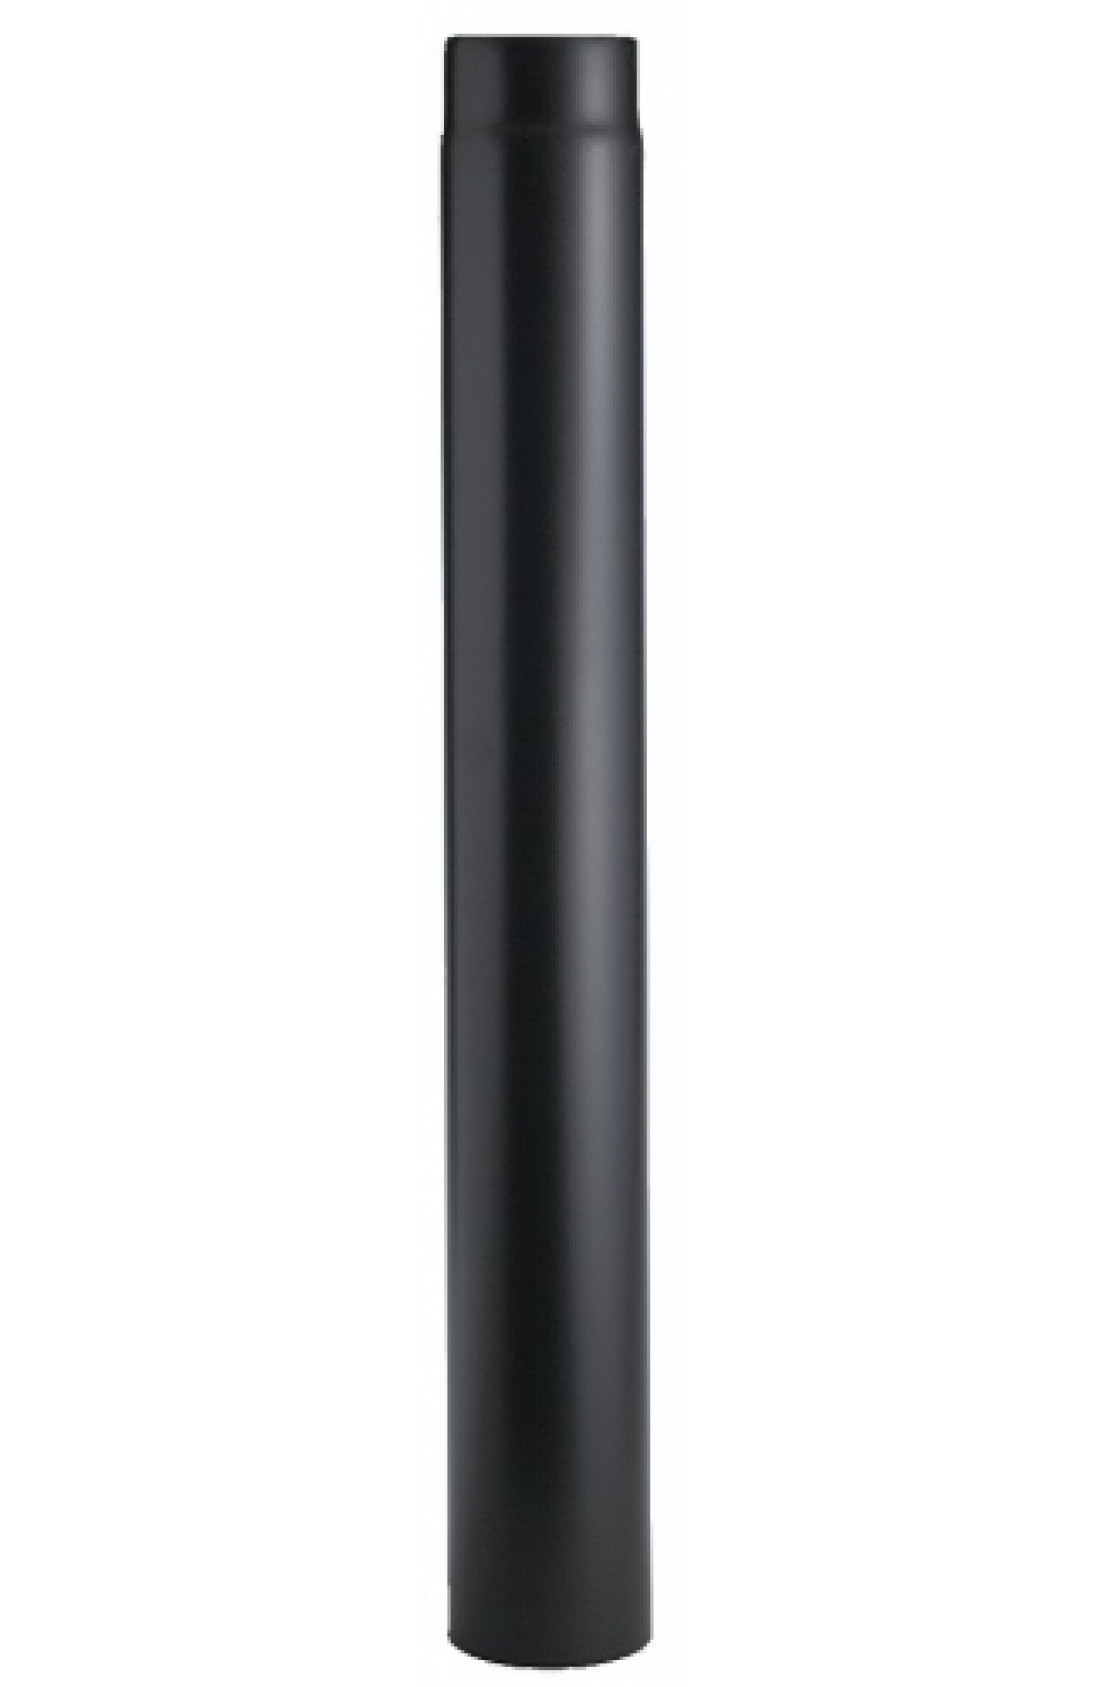 TN160500 - Tubo per stufa a legna verniciato nero sp. 2mm L 500mm diam Tubo Telescopico Per Stufa A Legna